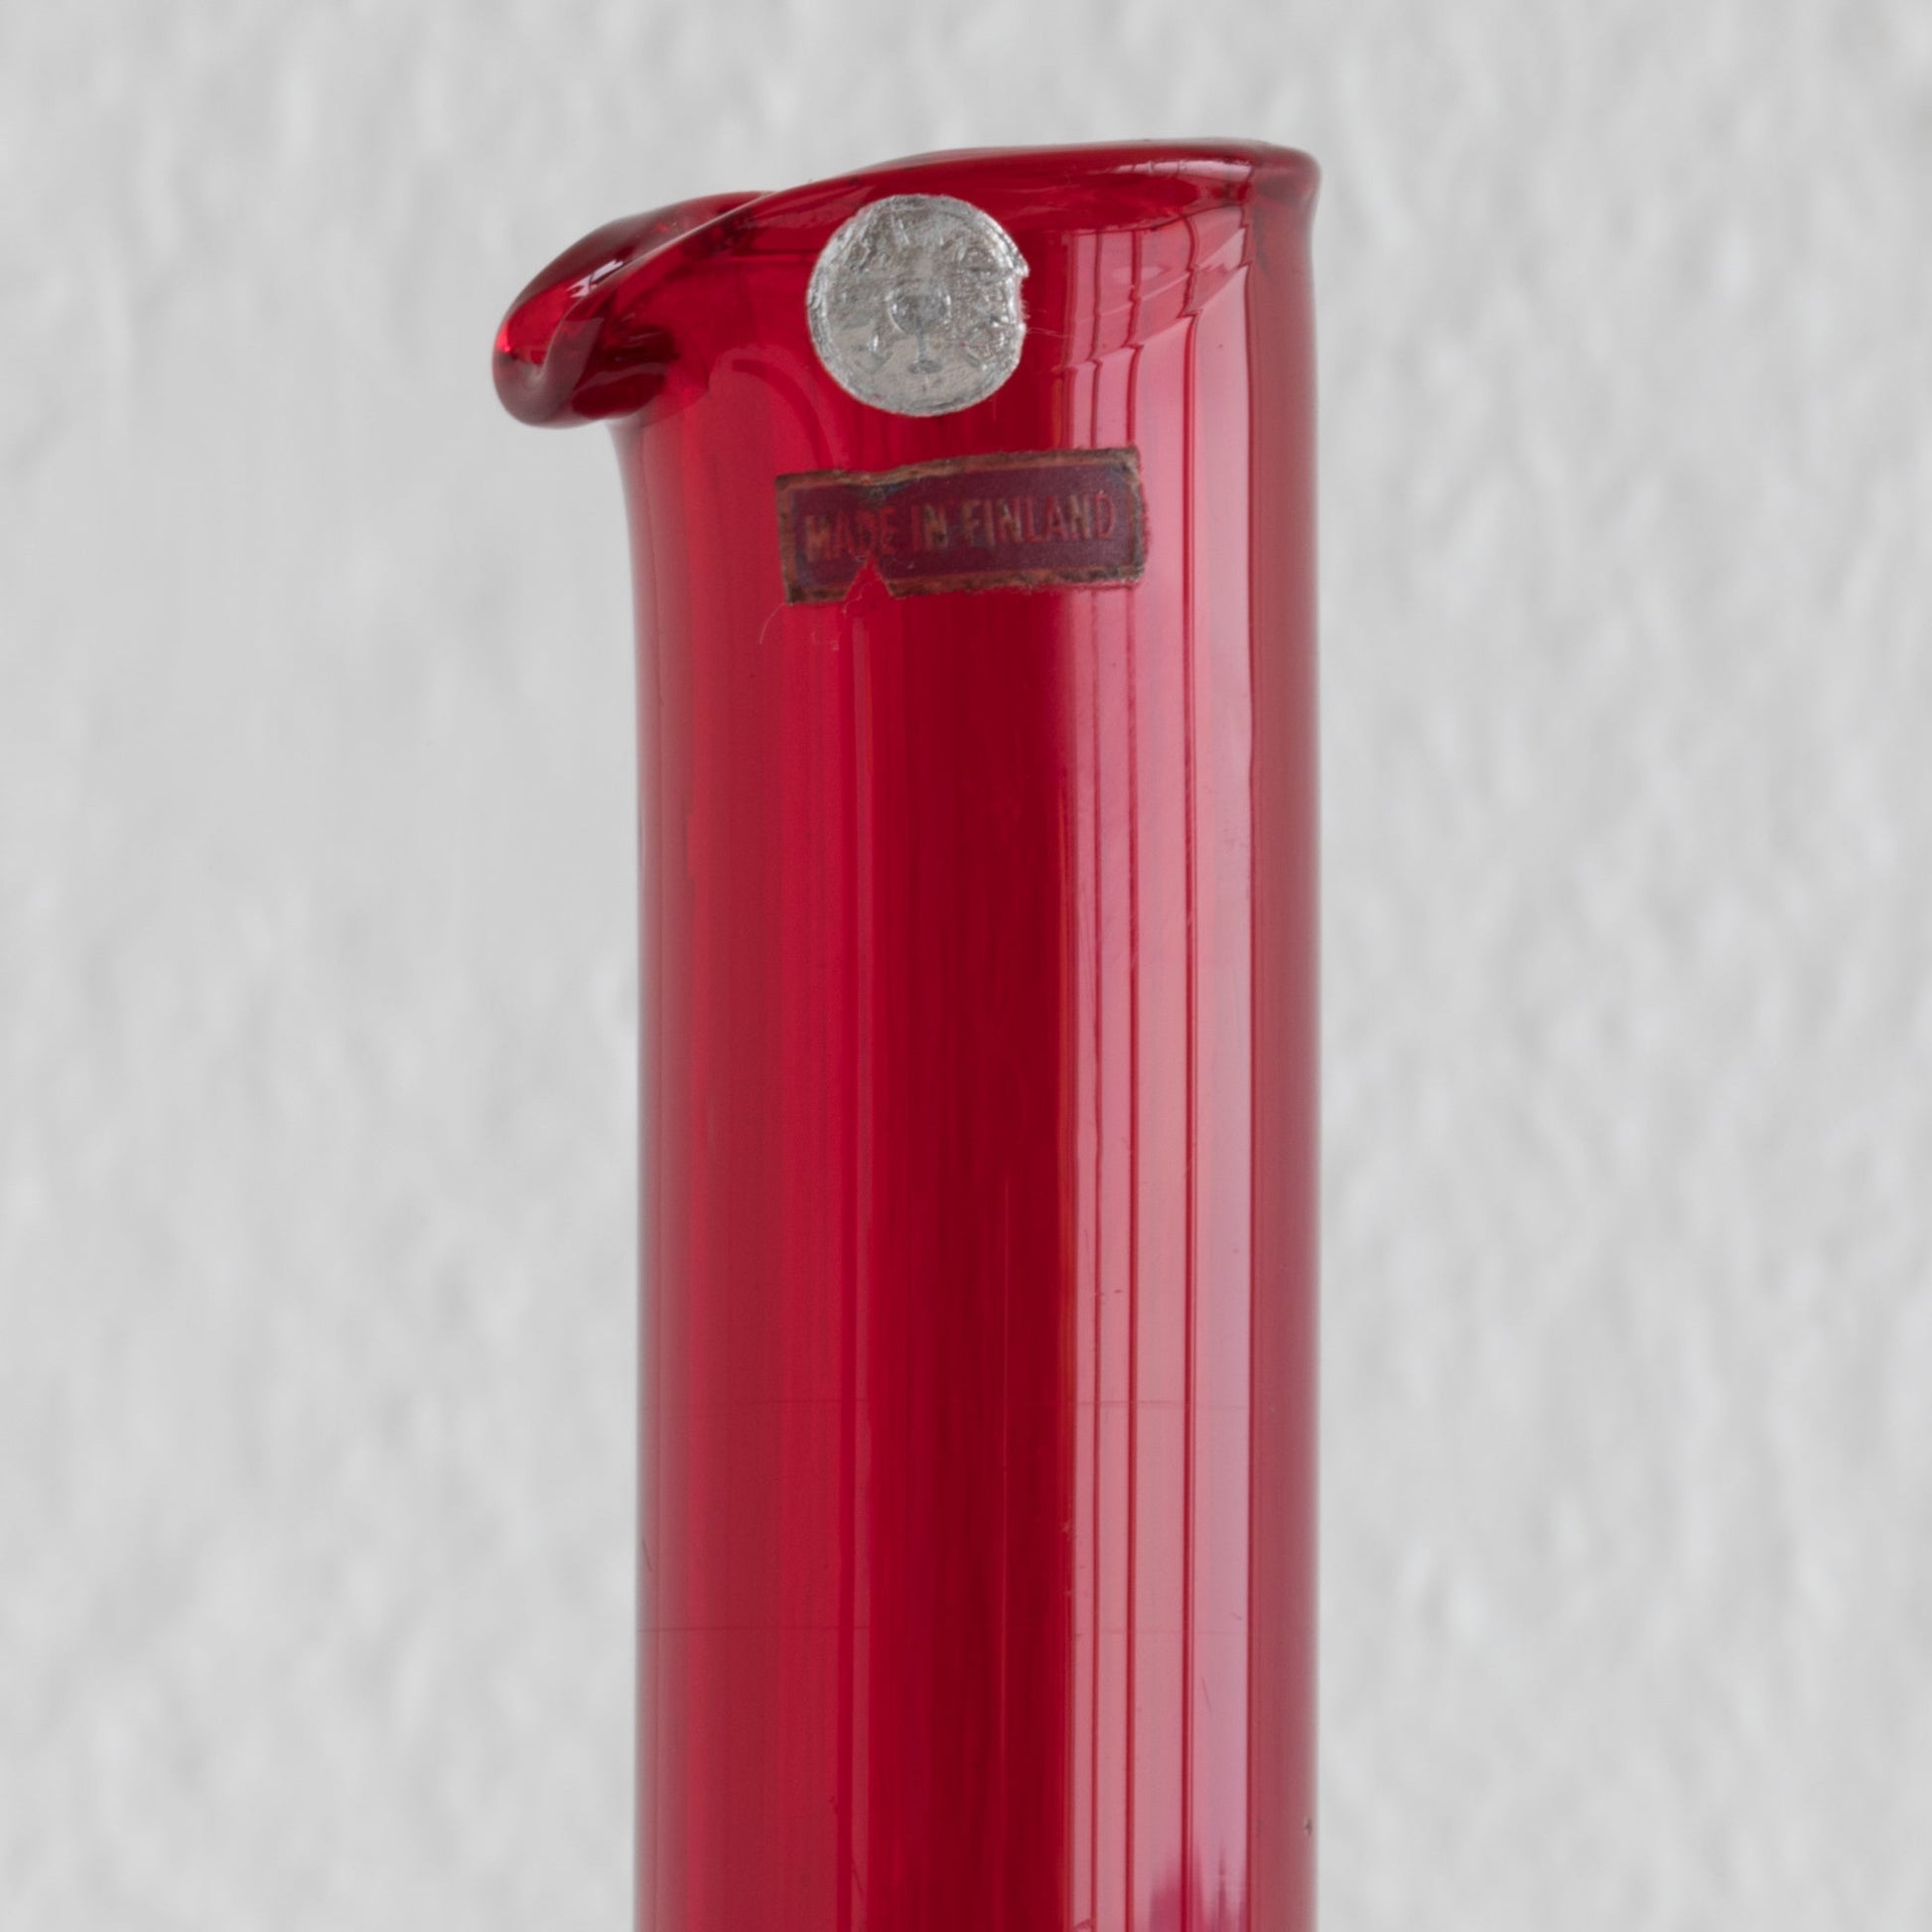 NANNY STILL Riihimäen Lasi Oy Koristepullo Ruby Red Glass Vase Mollaris.com 